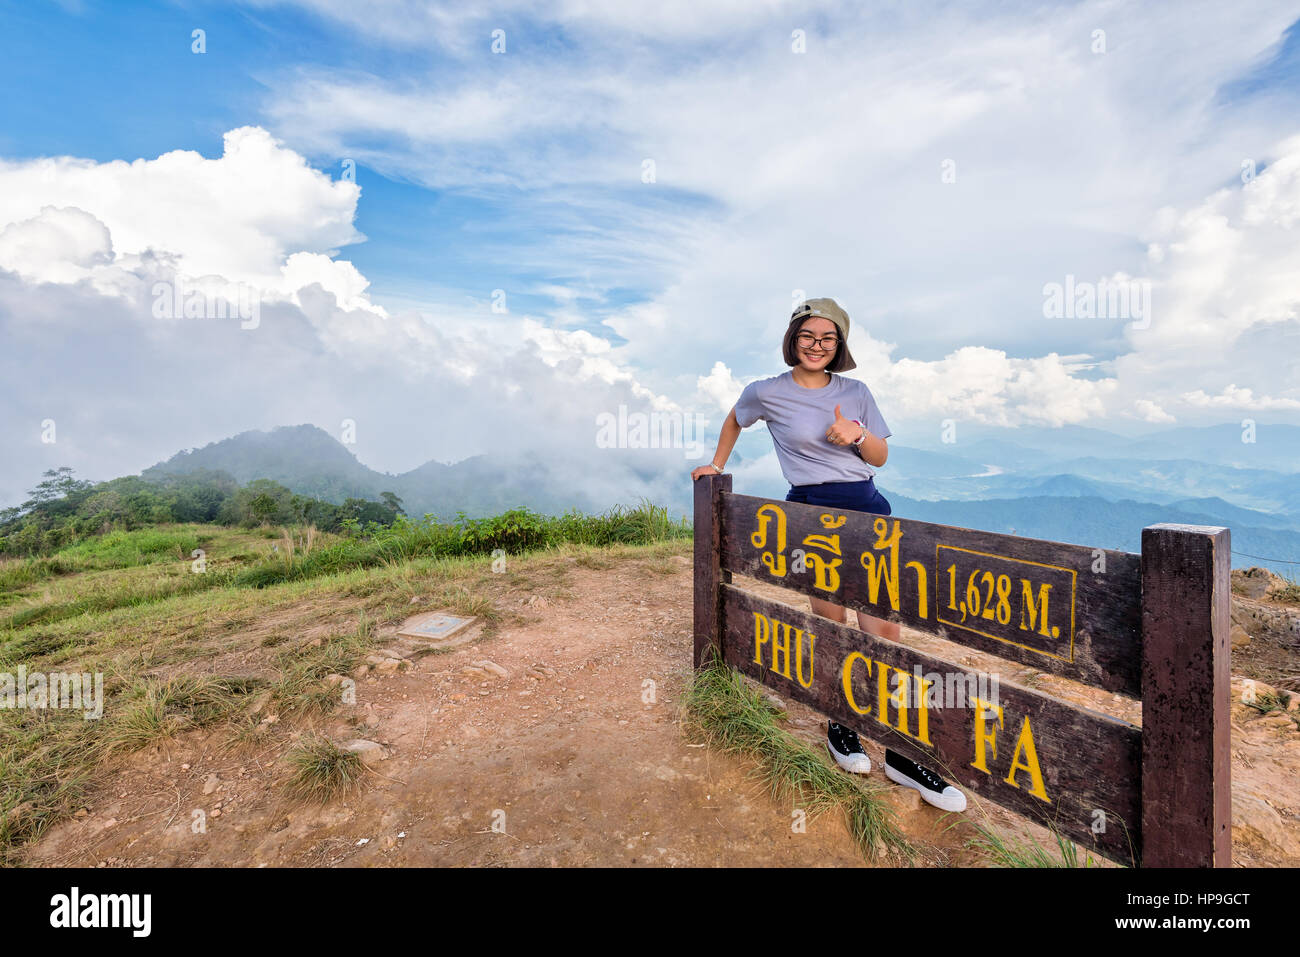 Turista jovencita excursionista tapa de desgaste y gafas sonrisa permanente plantean pulgar arriba, cerca de las atracciones de placa de Phu Chi Fa Forest Park en la montaña Foto de stock